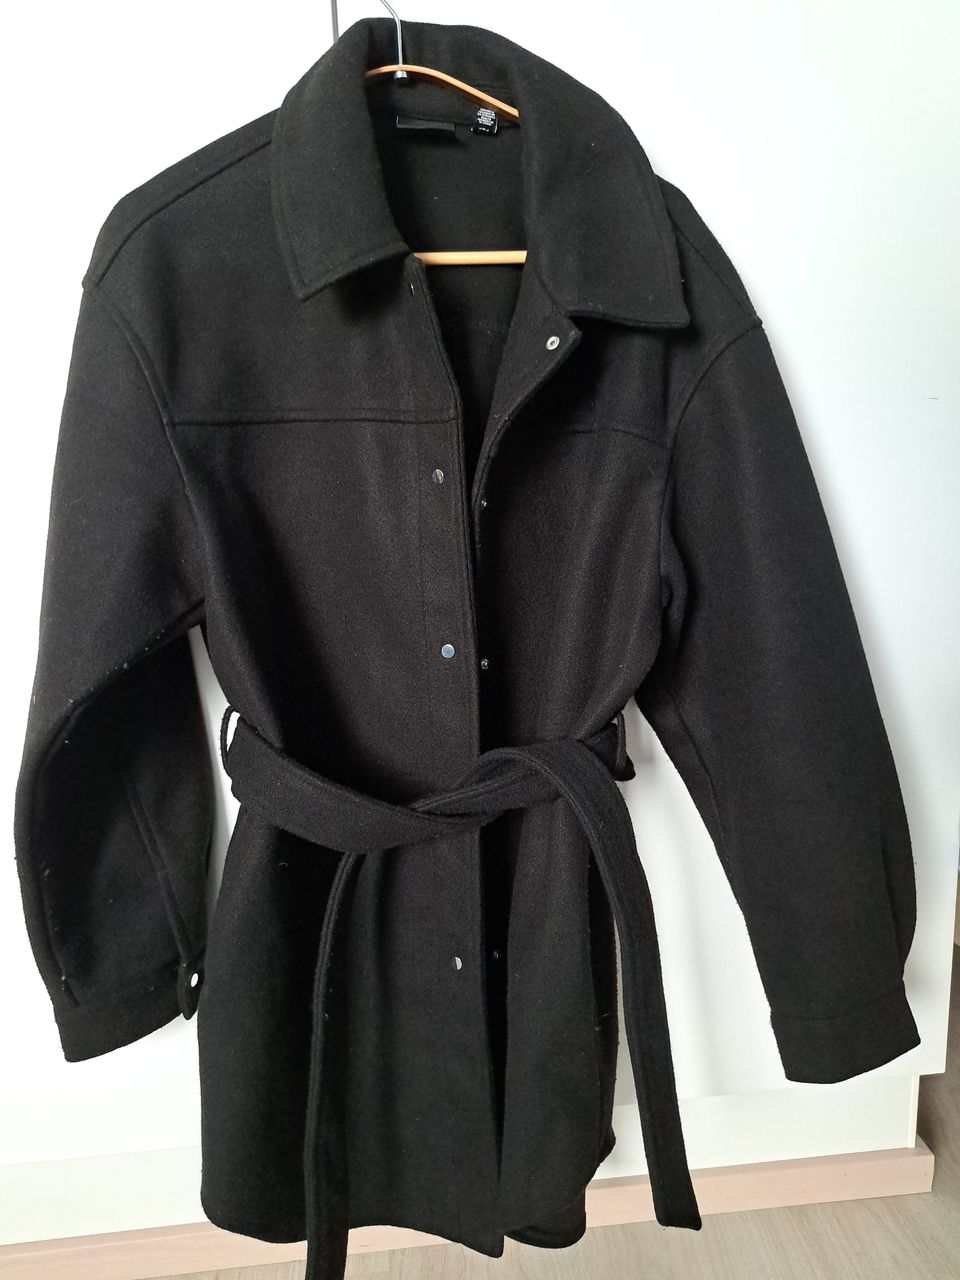 Musta takki - koko L